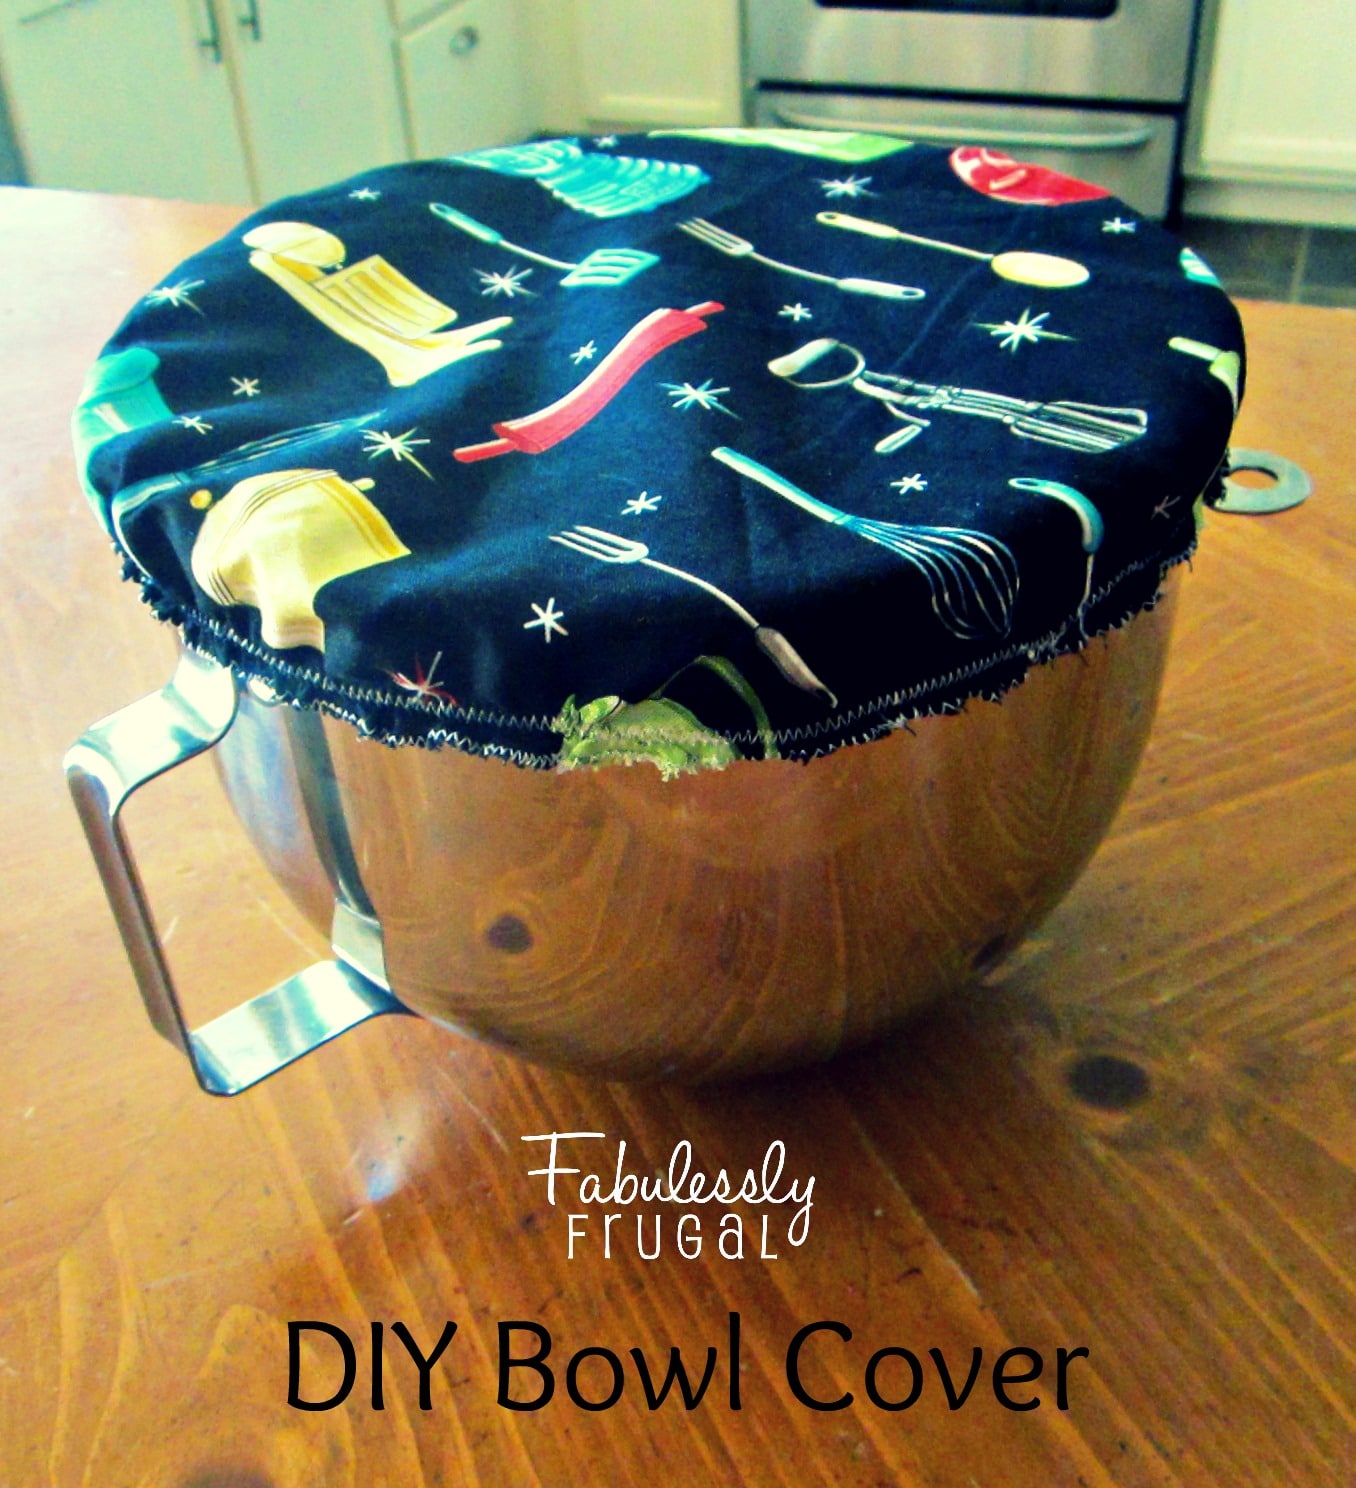 DIY Bowl Cover